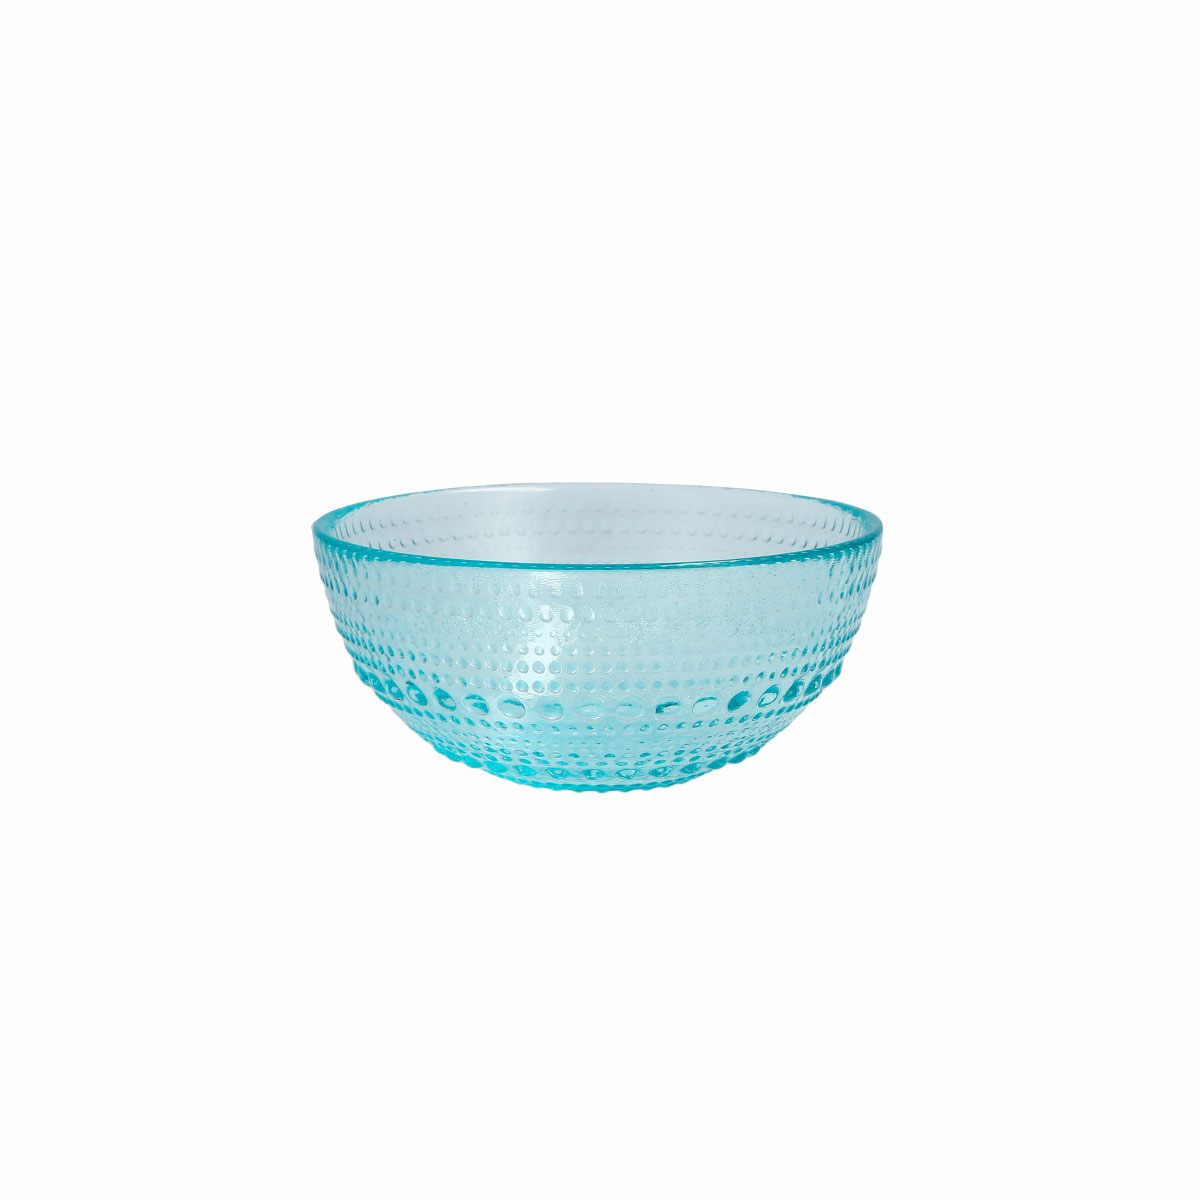 Fortessa Glass Jupiter Pool Blue Cereal Bowl, Single